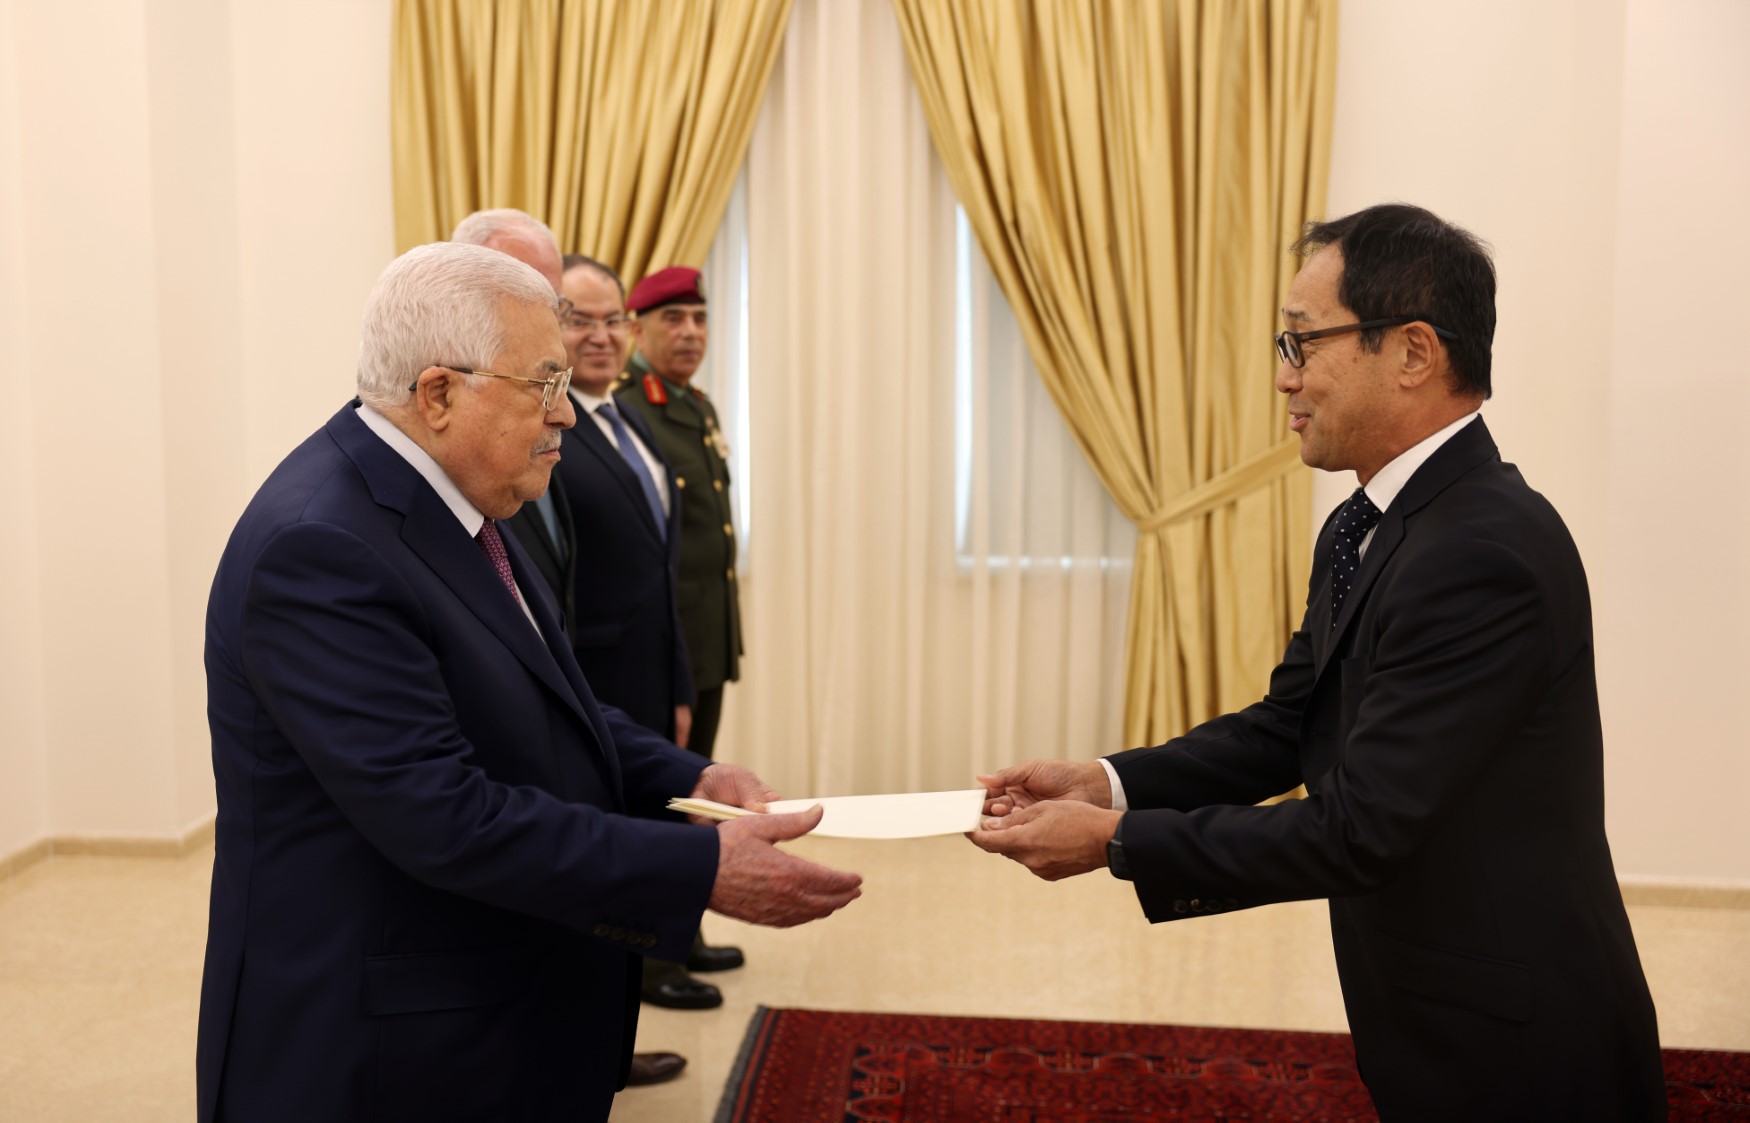 الرئيس عباس يتقبل أوراق تعيين ممثل اليابان لدى دولة فلسطين